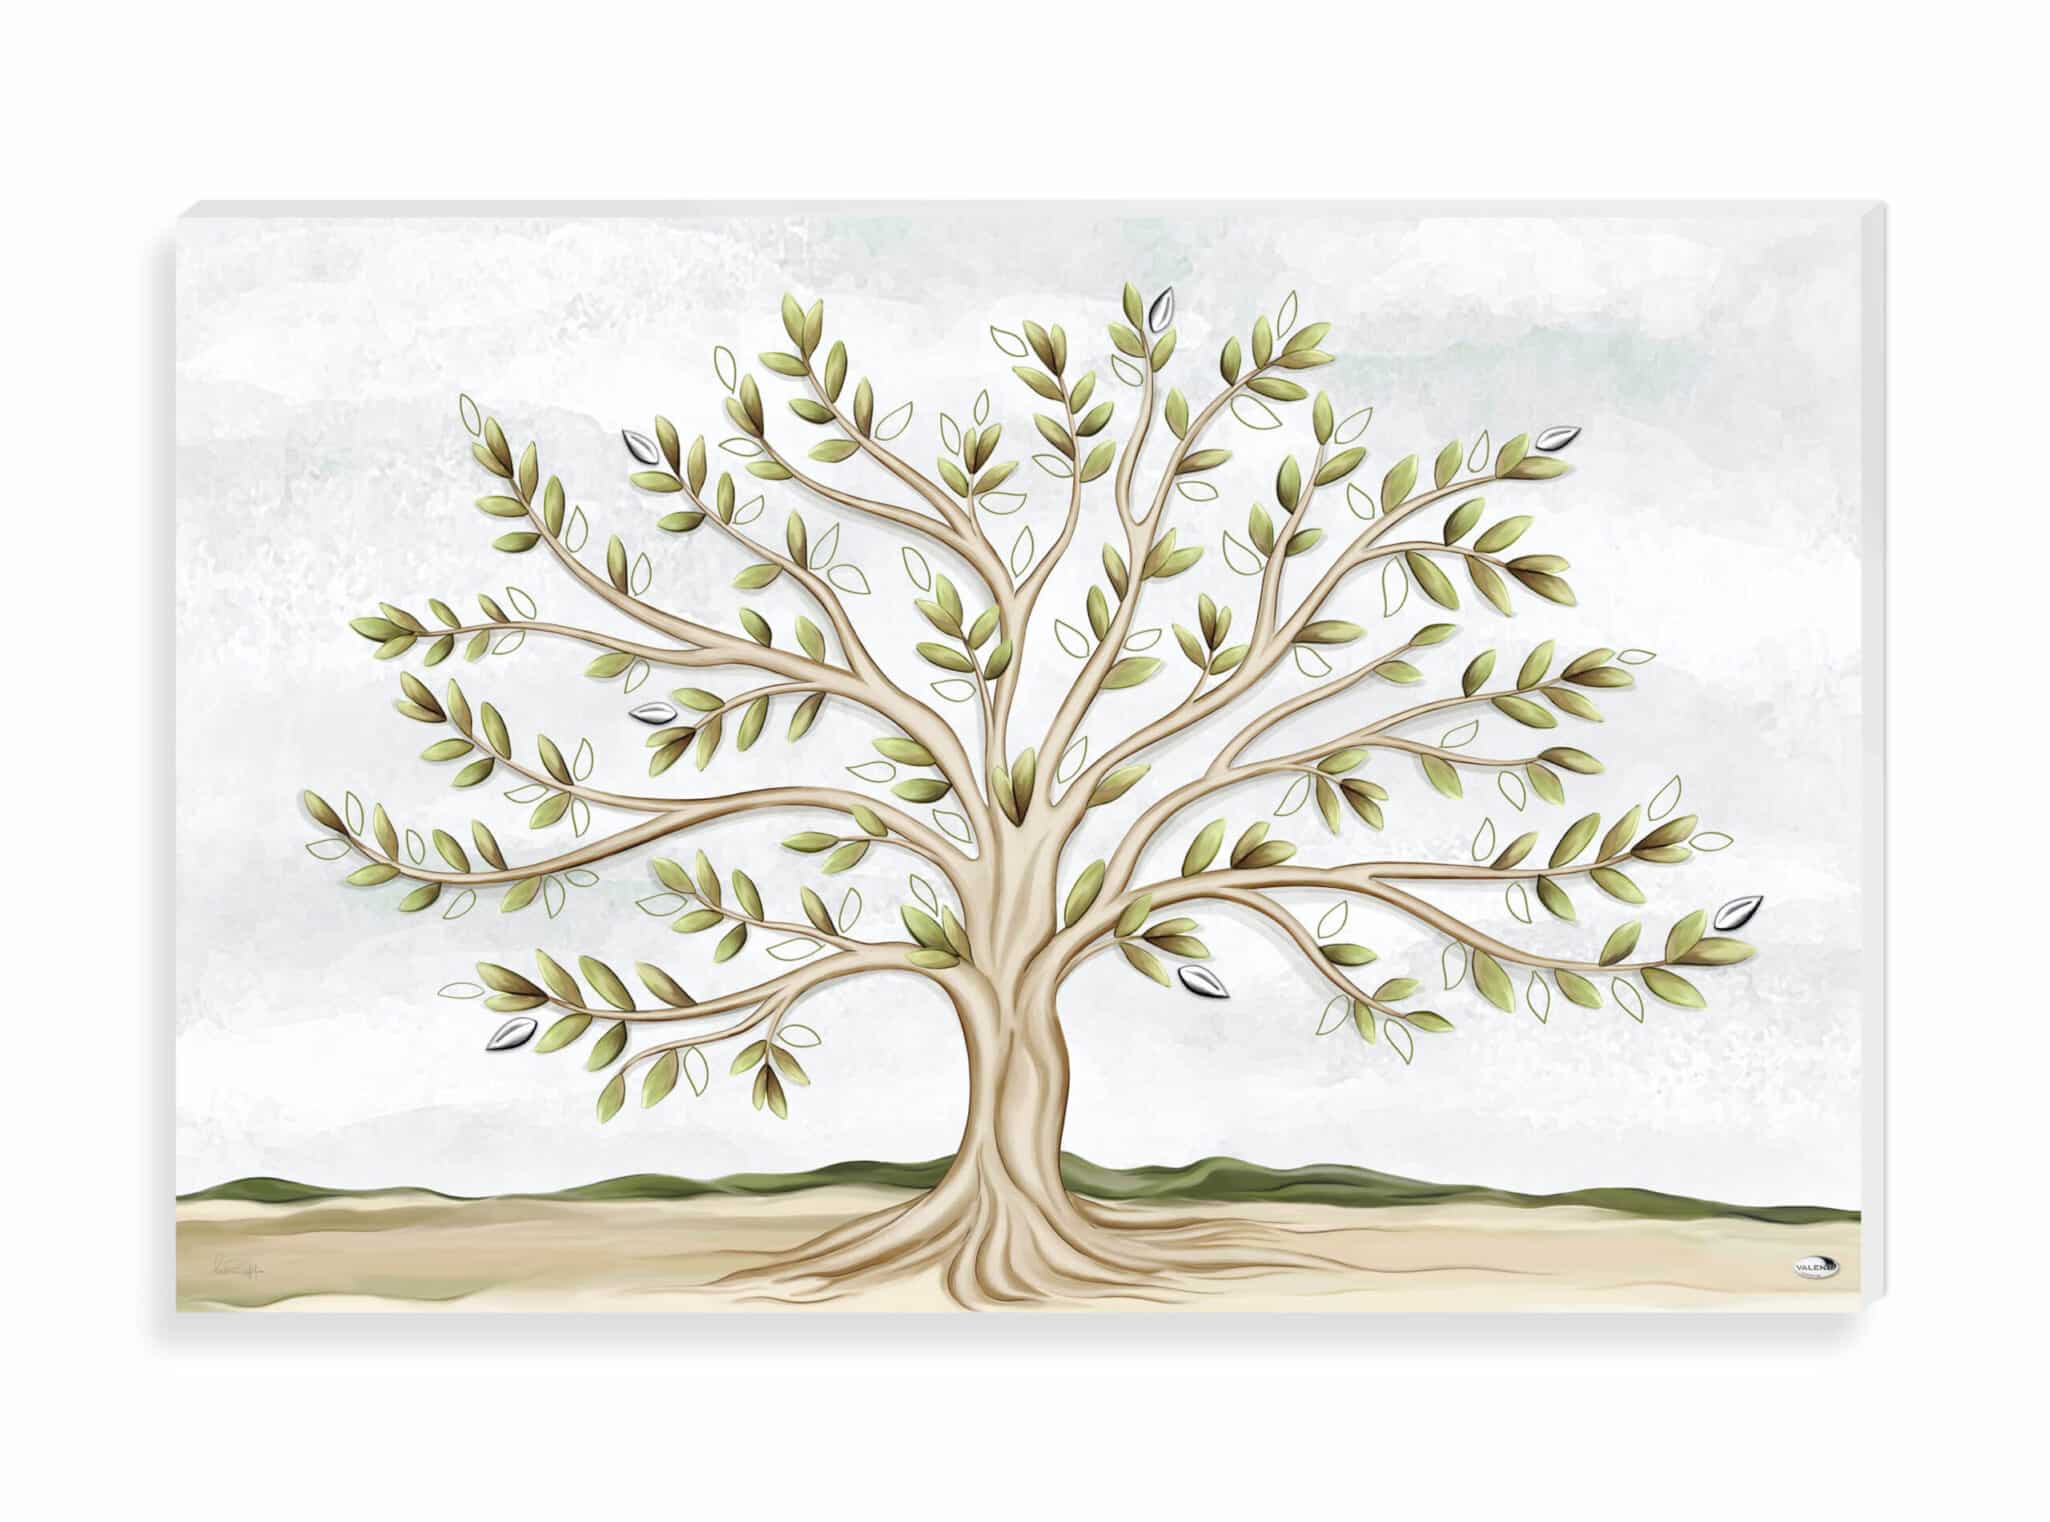 Pannello albero genealogico - Merceria Pessiva